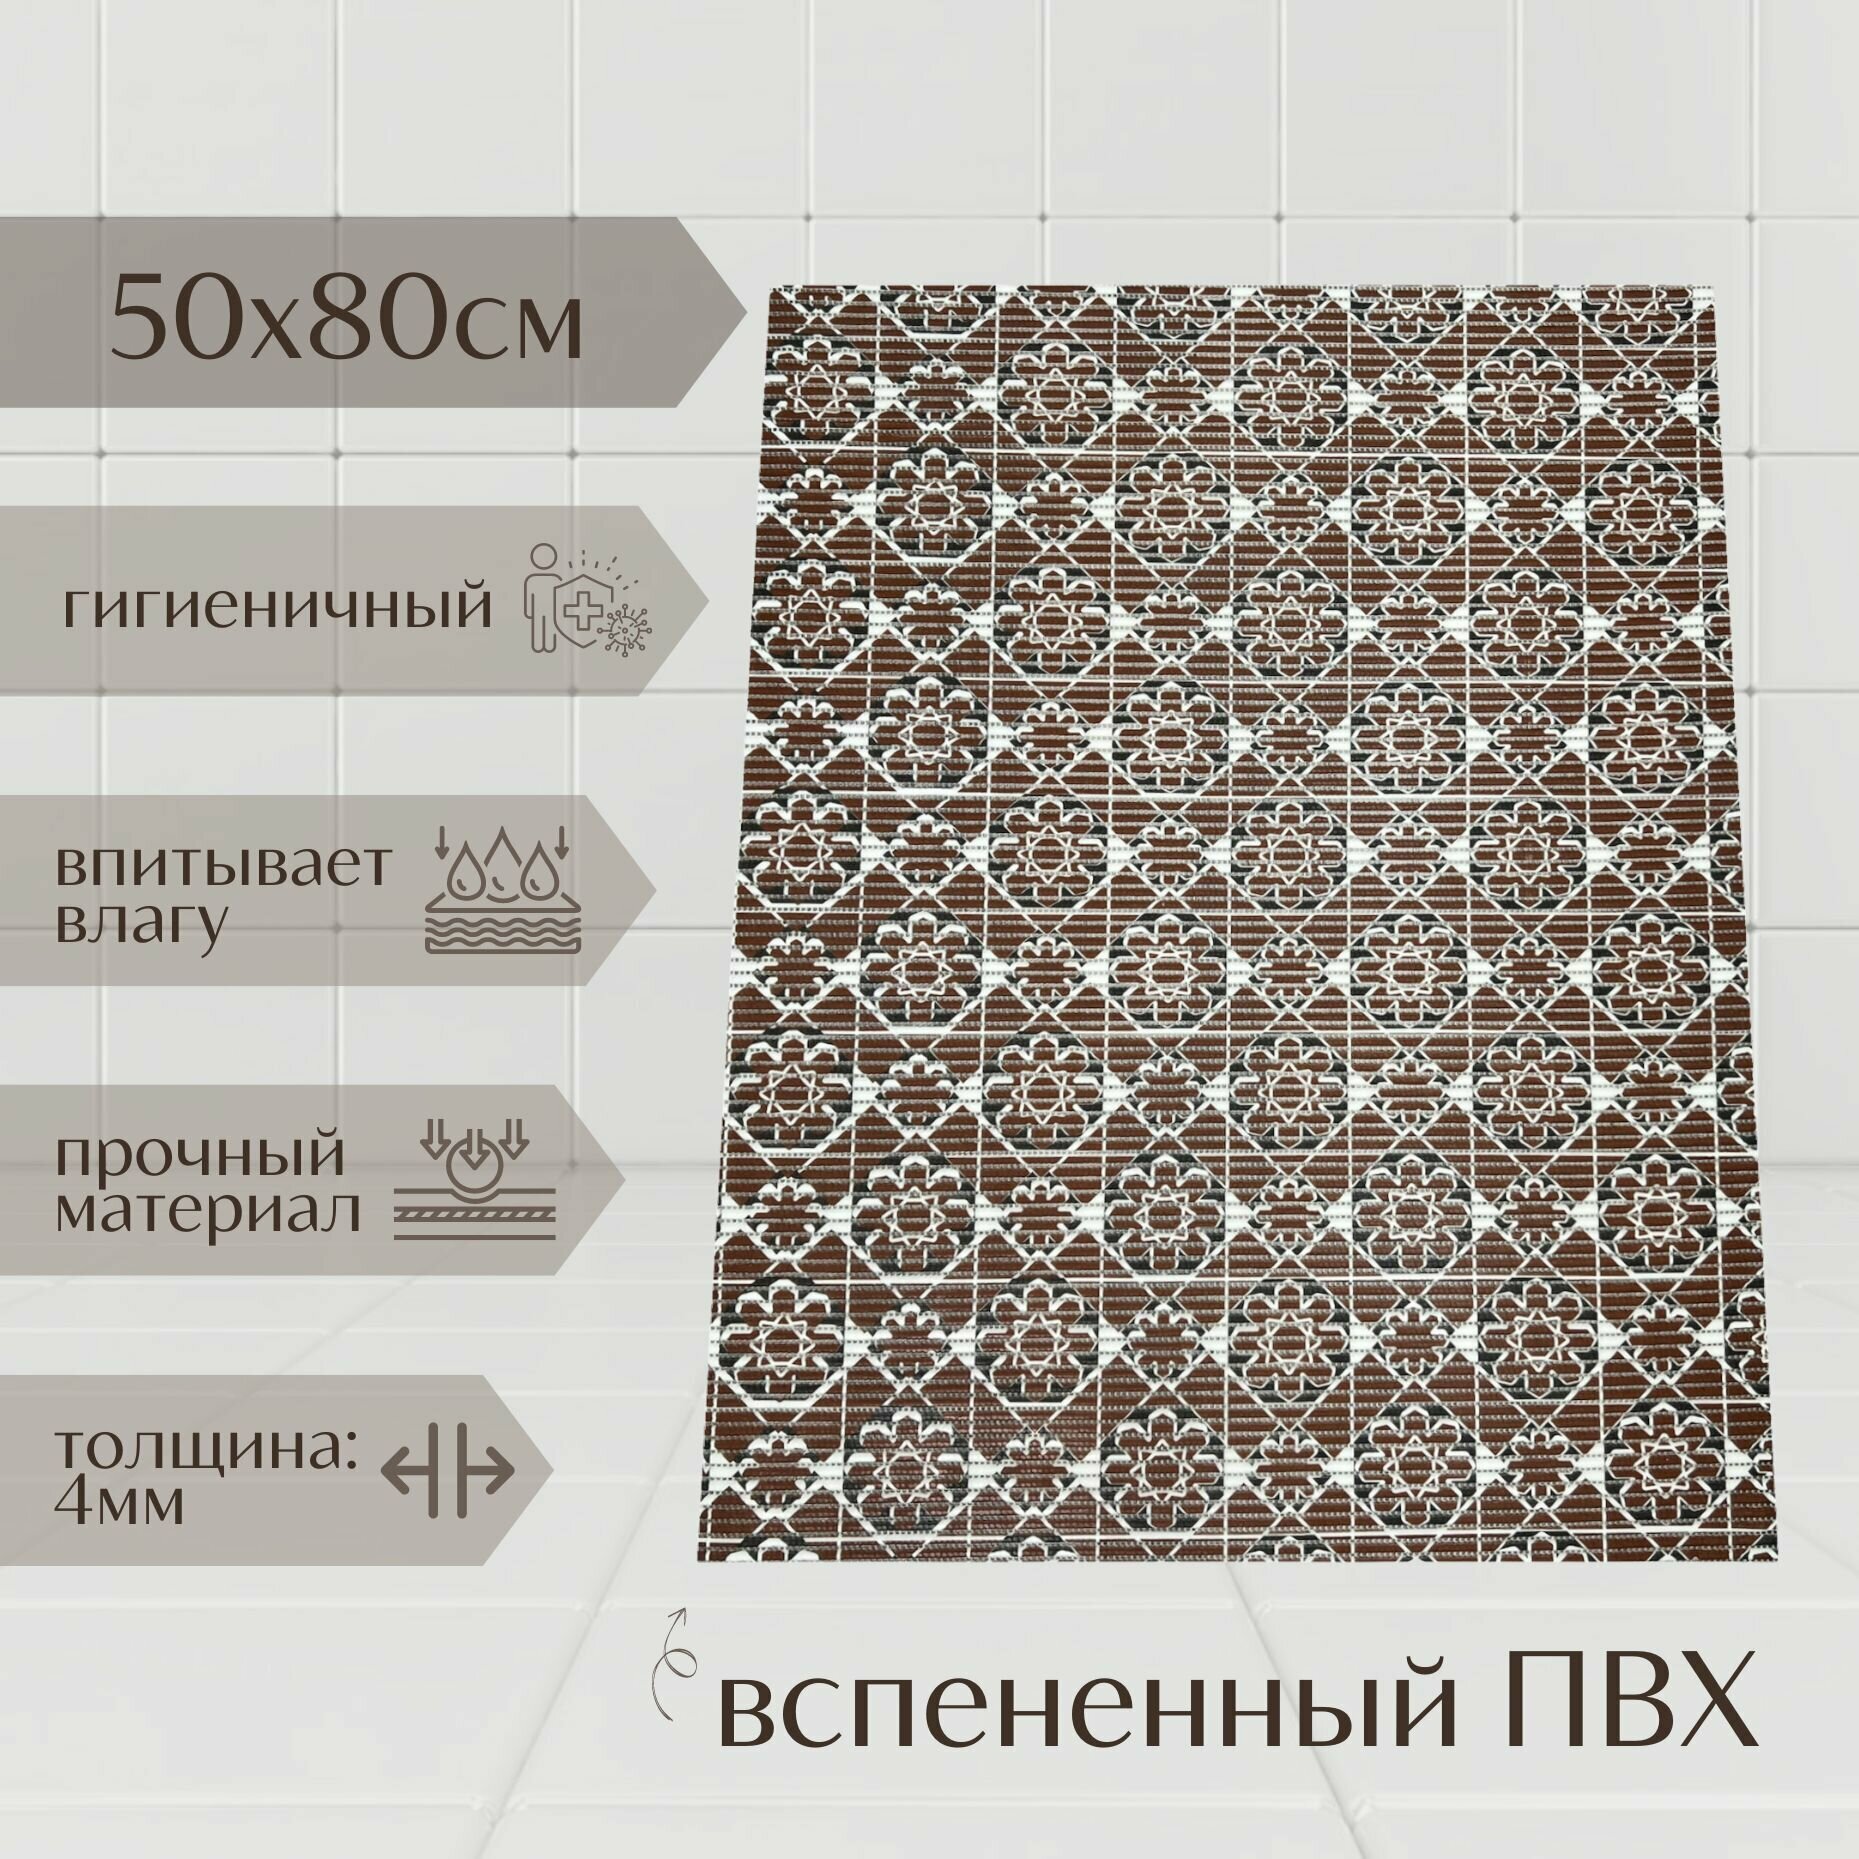 Напольный коврик для ванной комнаты из вспененного ПВХ 50x80 см коричневый/чёрный с рисунком